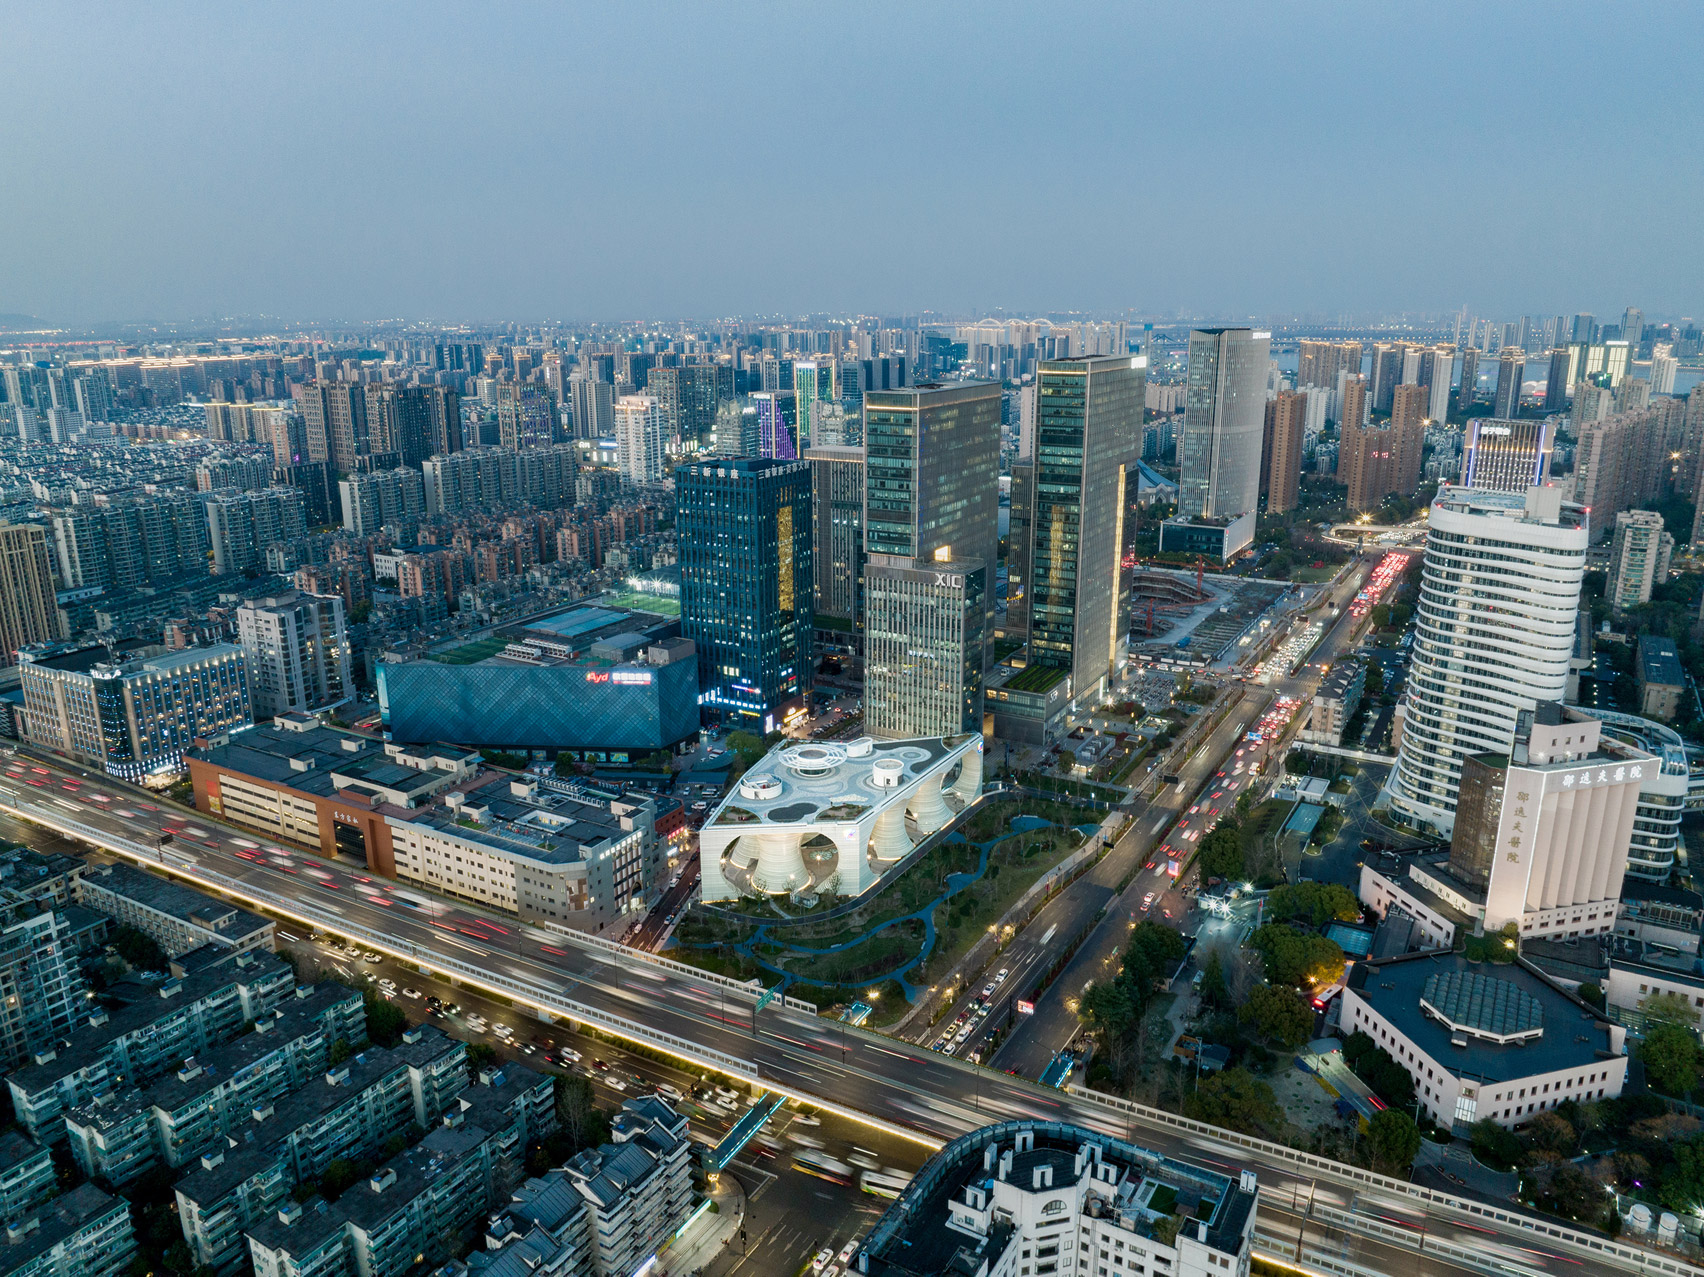 View of infrastructure in Hangzhou